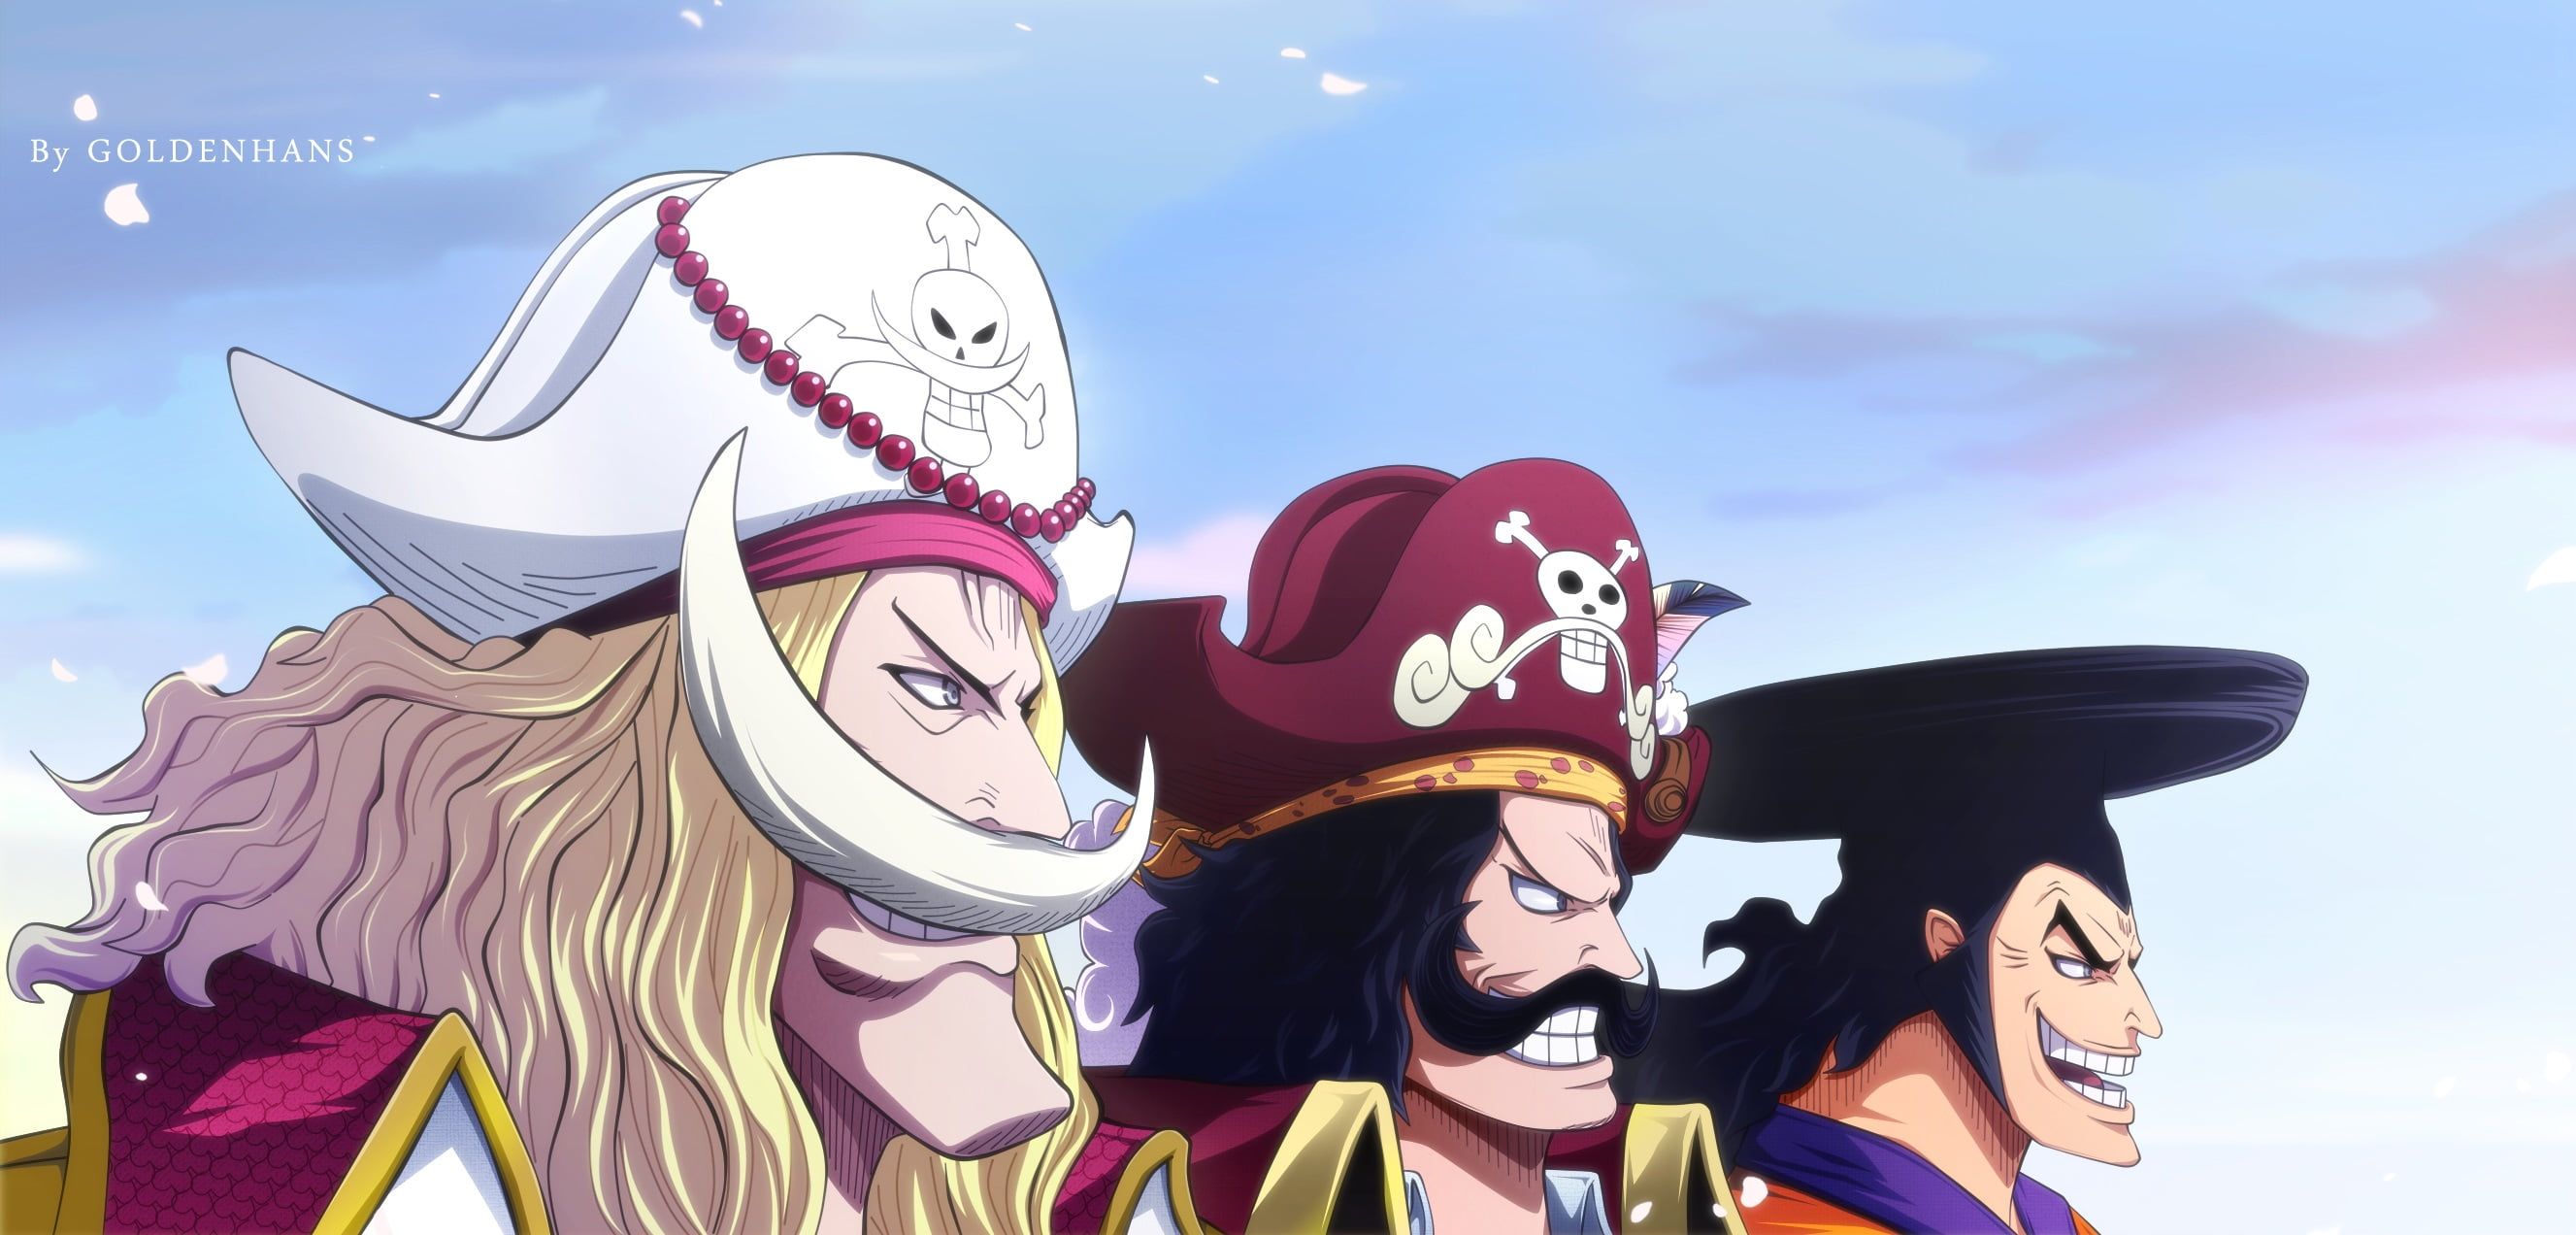 Tổng Hợp Những Hình Ảnh Về One Piece Đẹp Hình Nền Luffy Full Hd